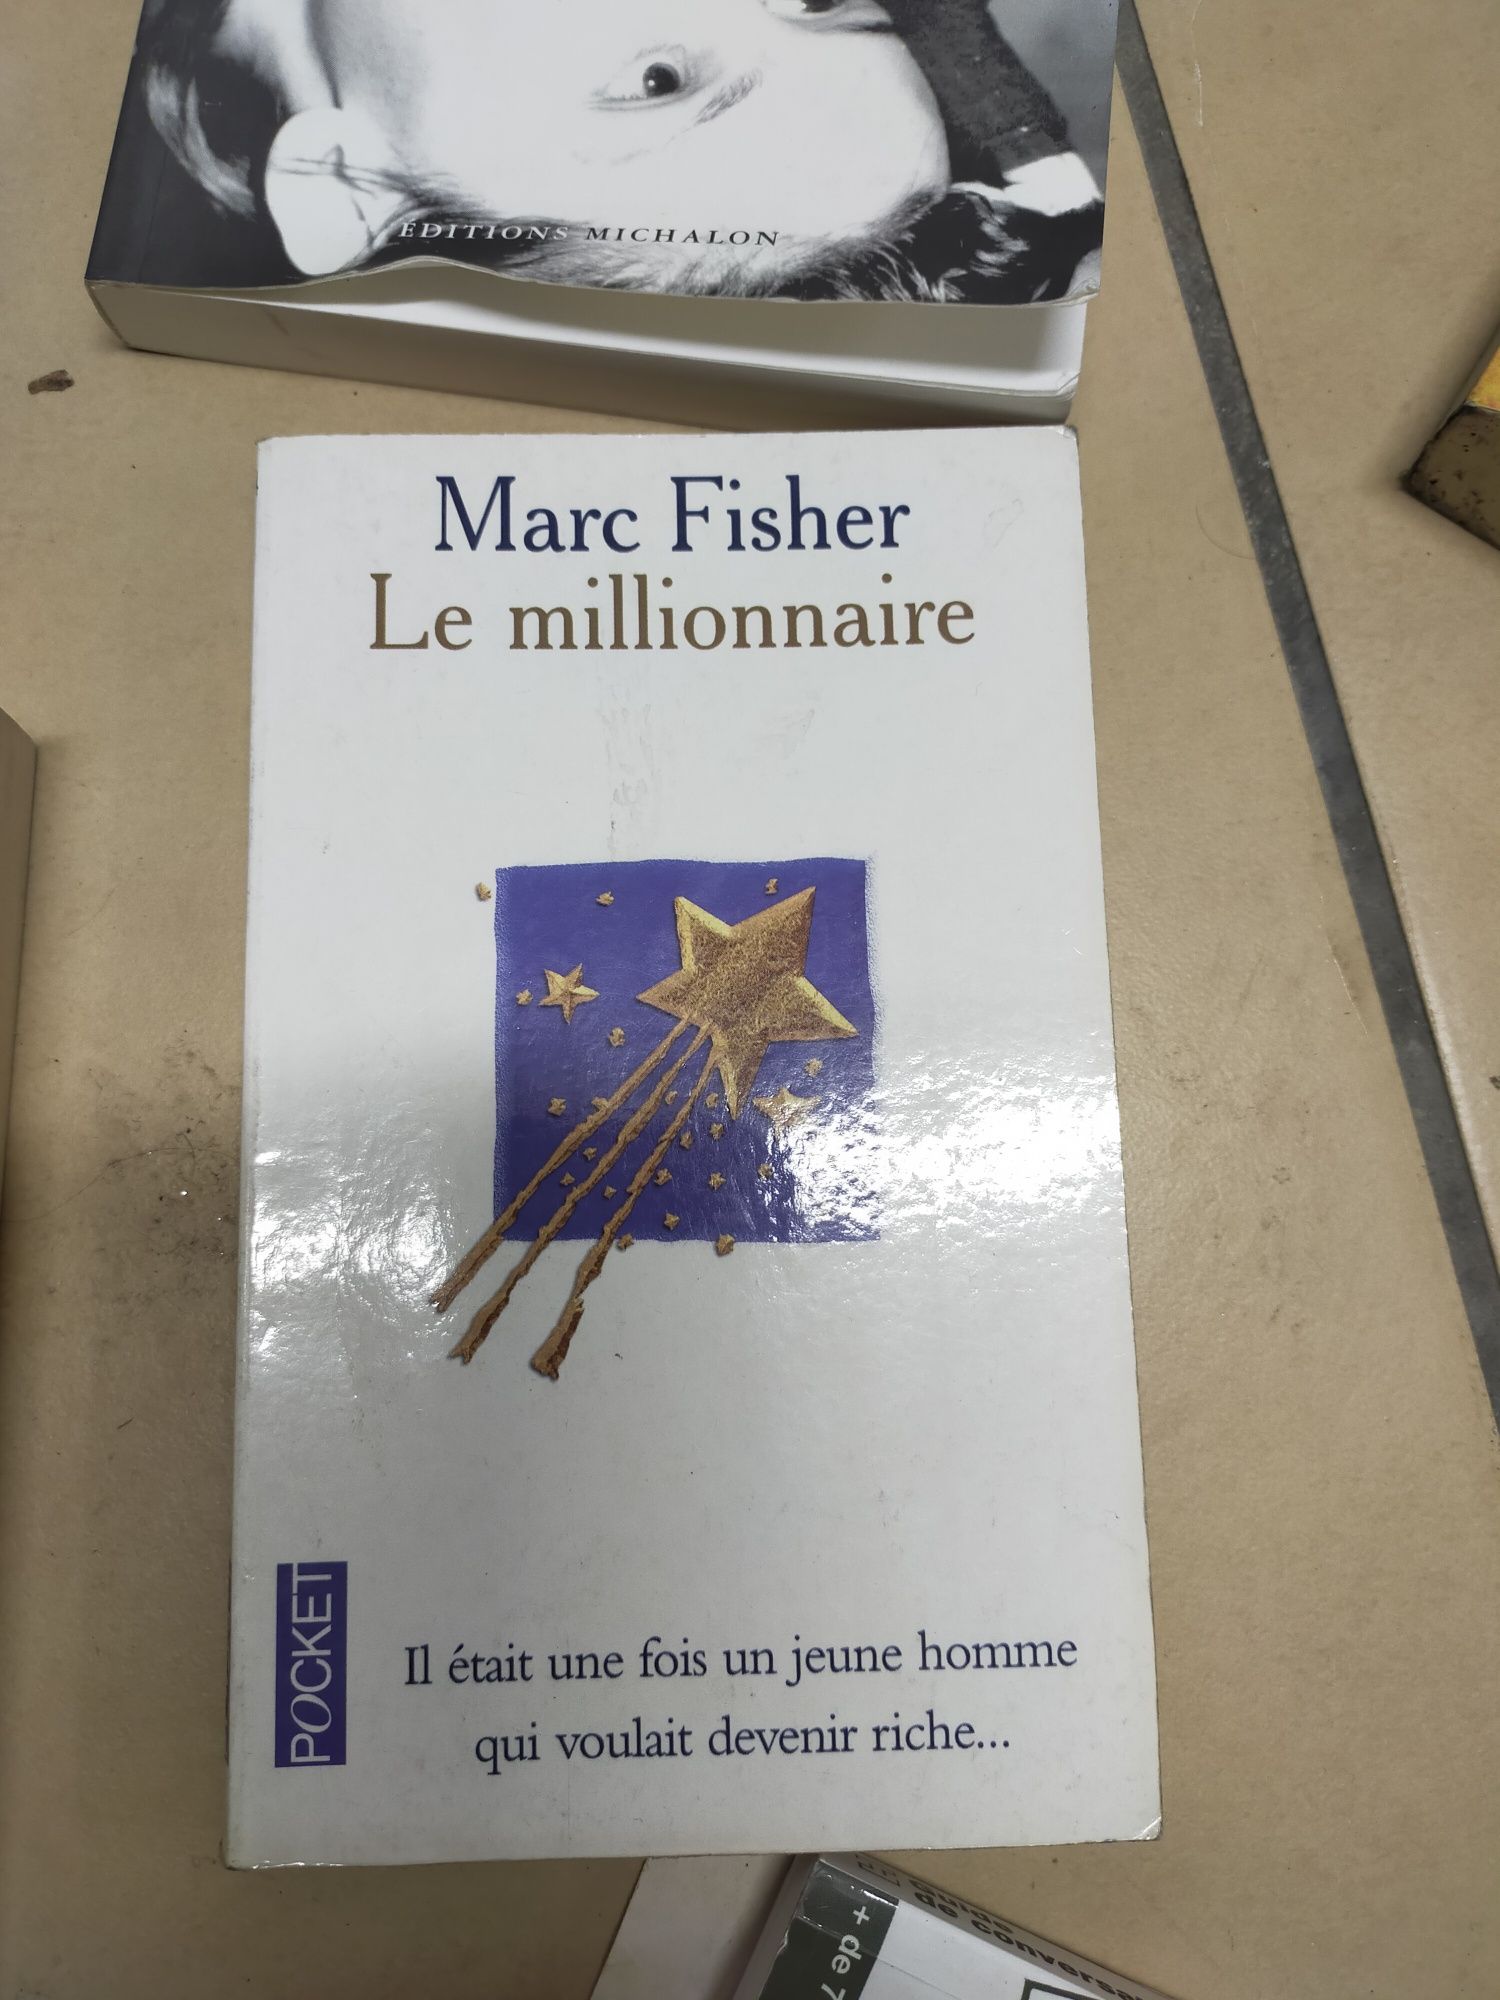 Książki w języku francuskim